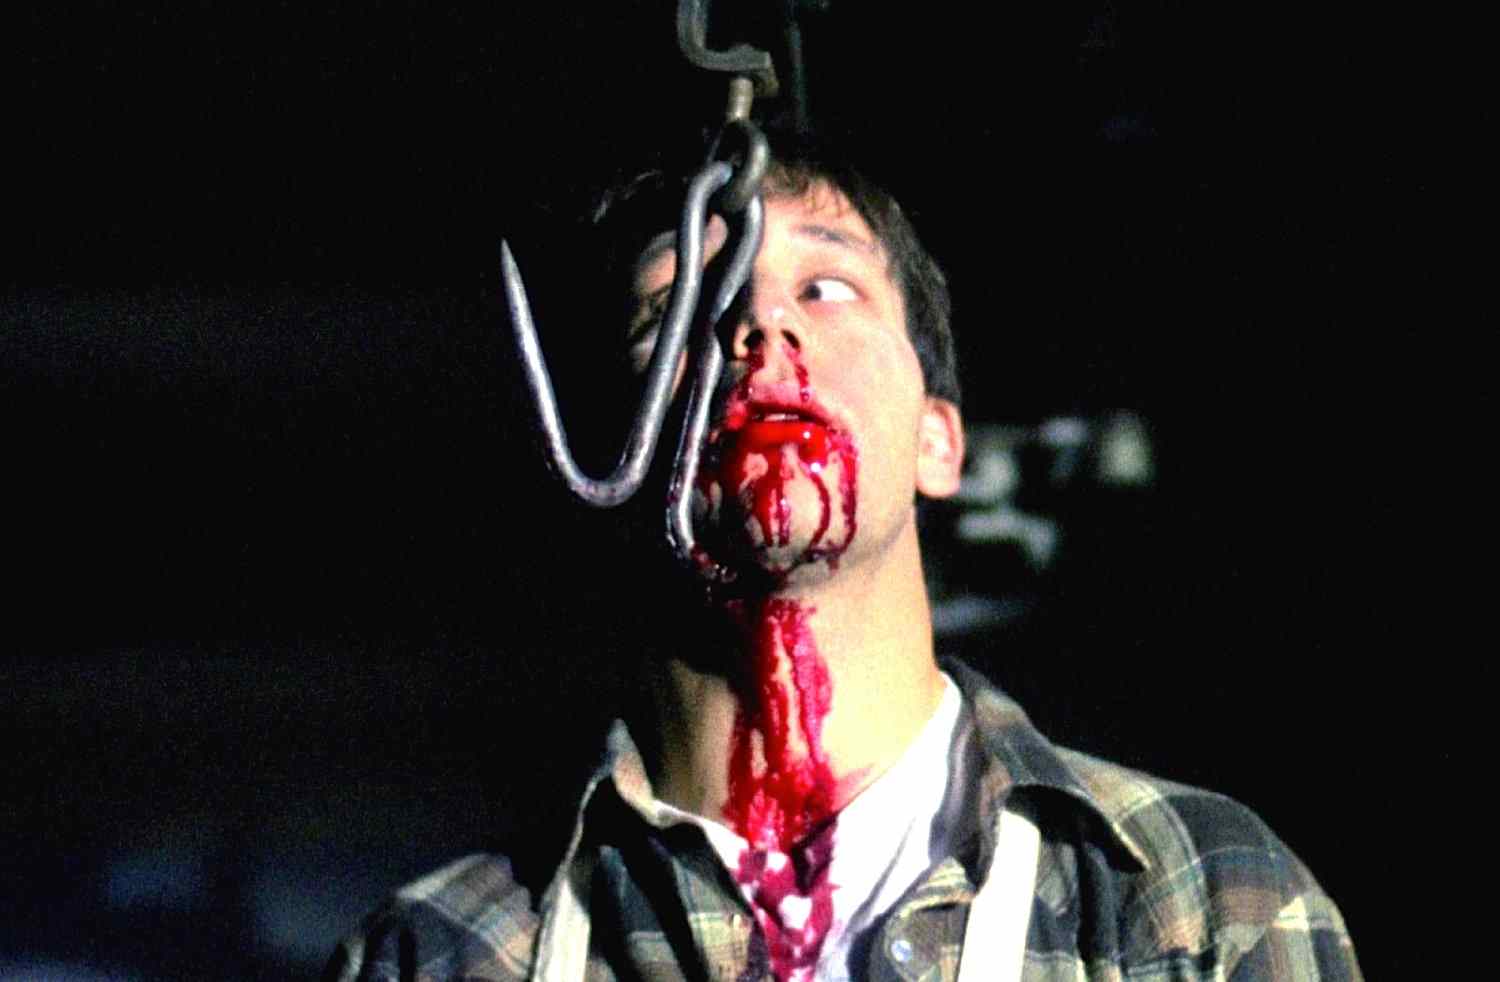 The meat hook death scene in the 1989 Scott Spiegel slasher film Intruder.